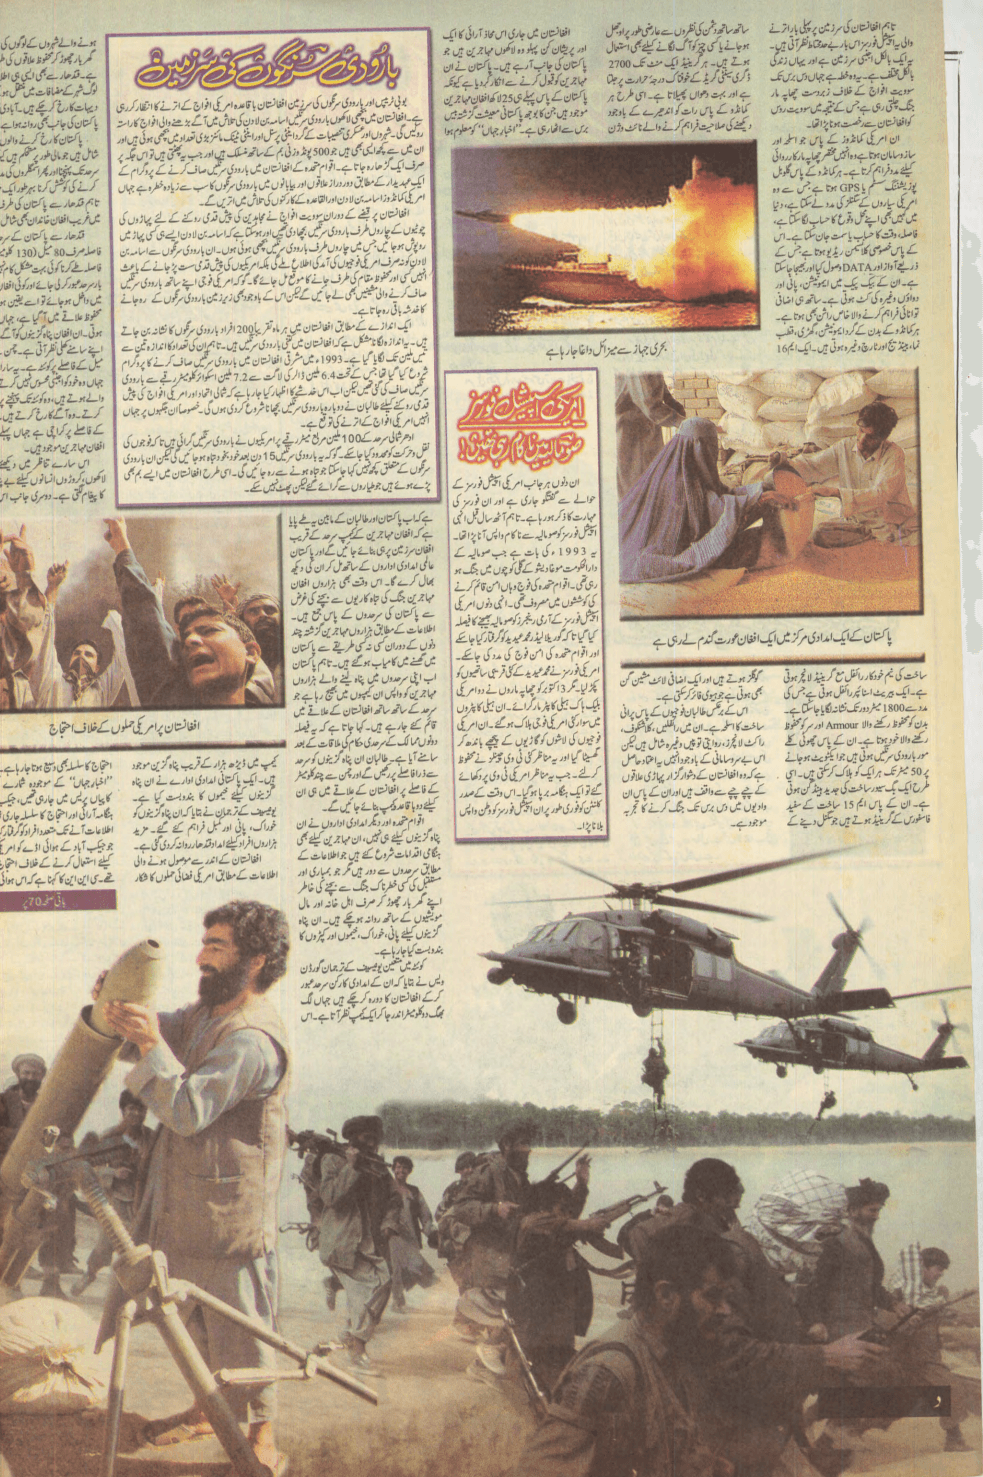 Akhbar-e-Jahan (Nov 4, 2001) - KHAJISTAN™